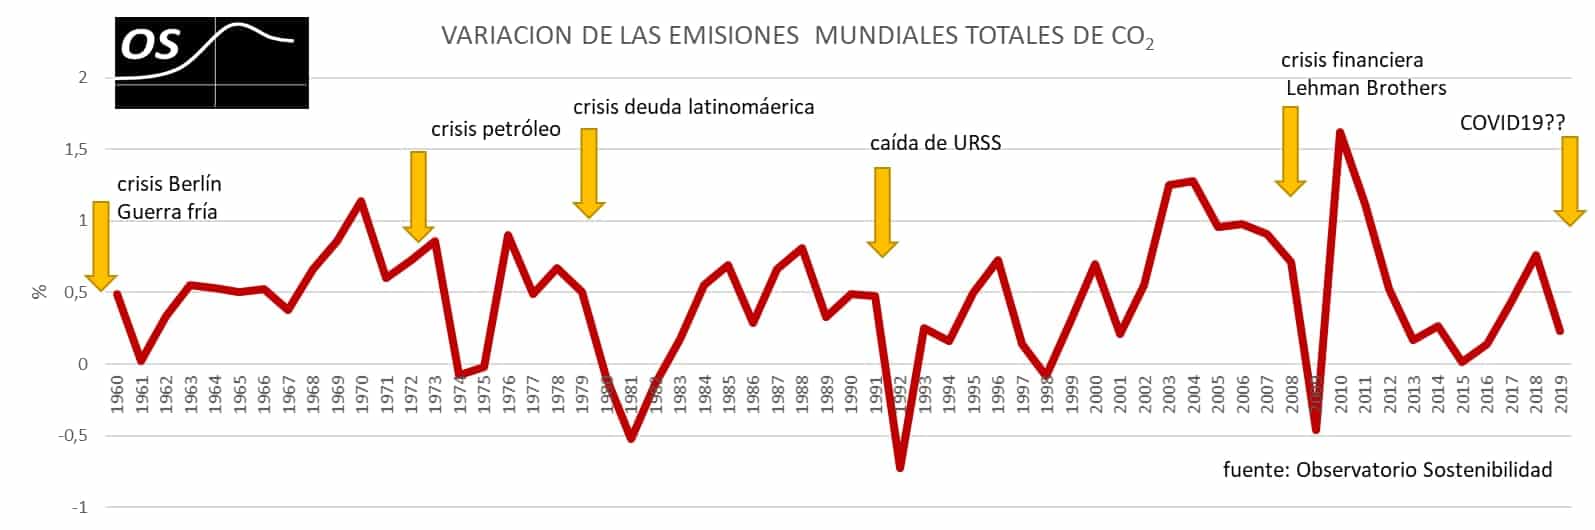 Variación de las emisiones globales de CO2 durante las grandes crisis económicas-